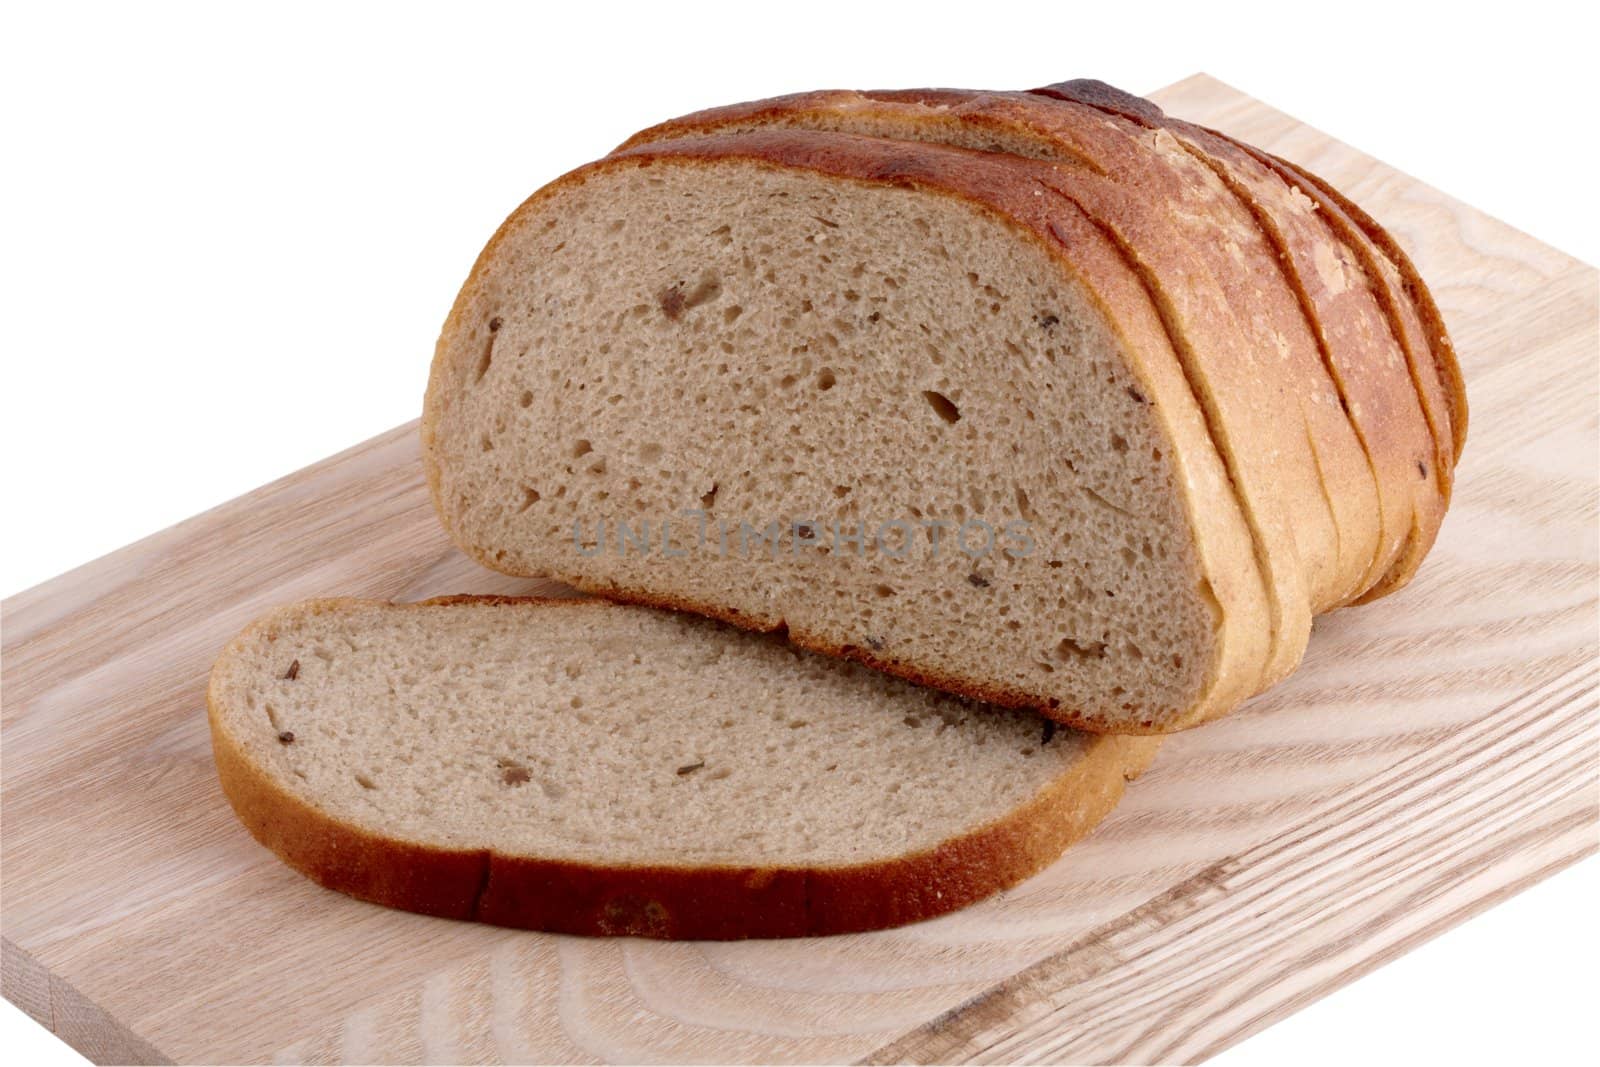 Slices of grain bread by Nikonas